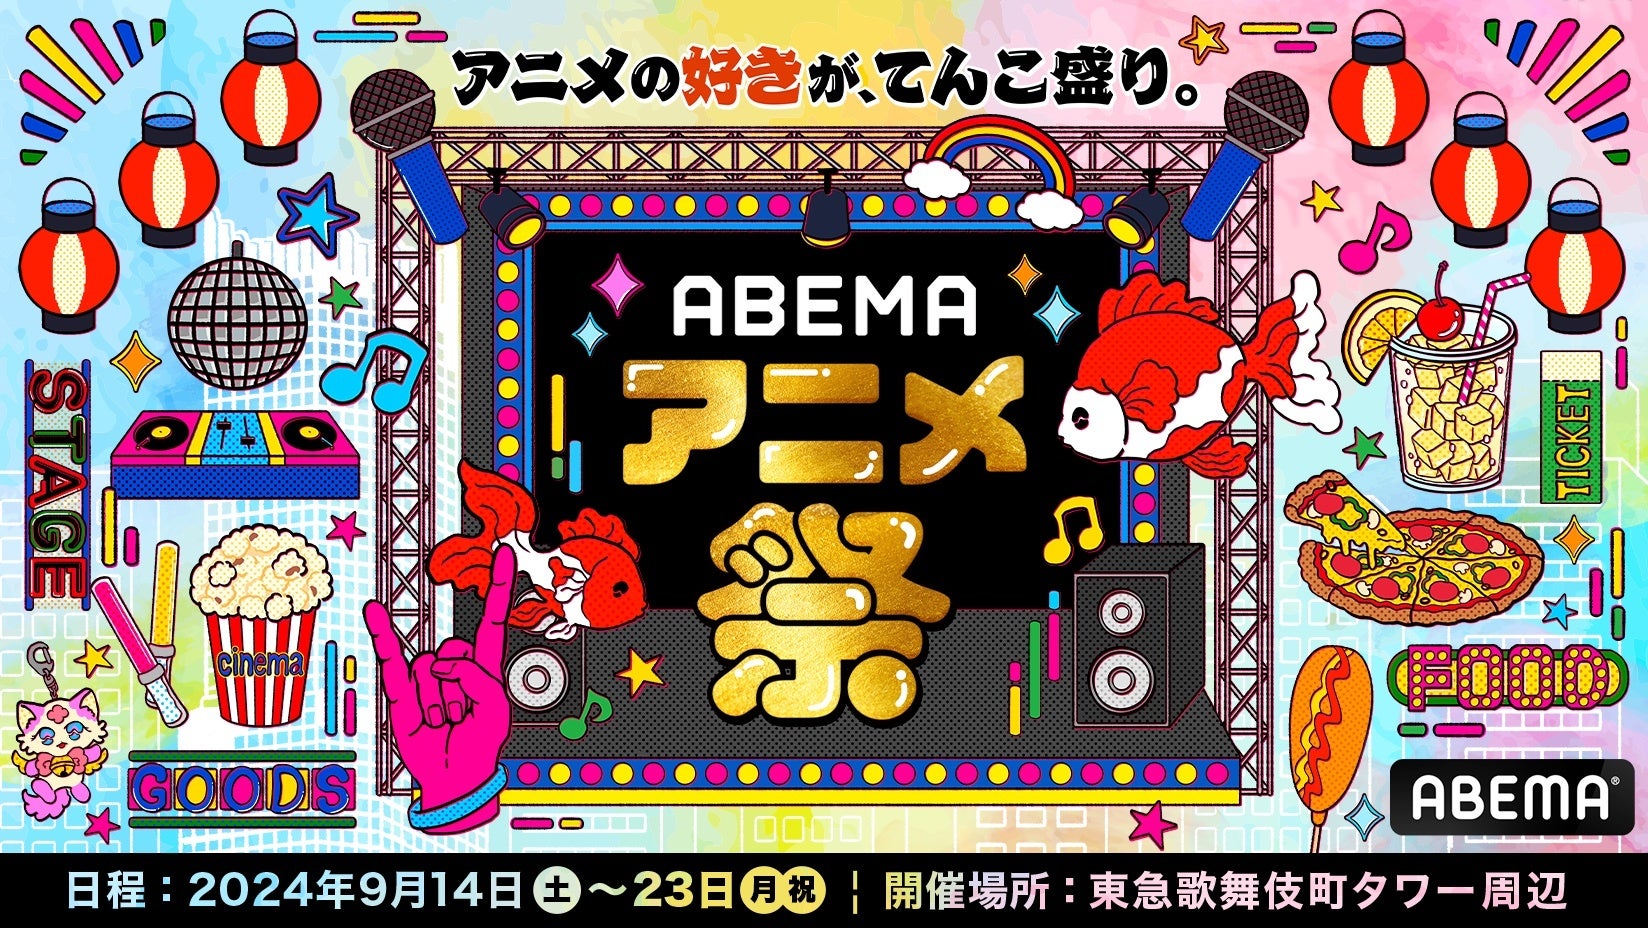 「ABEMA」が贈る最大級のアニメの祭典「ABEMAアニメ祭」人気作のスペシャルステージ11ステージ＆総勢20組以上の豪華声優・ゲスト陣の出演が決定！ステージイベントタイムスケジュール第一弾を発表